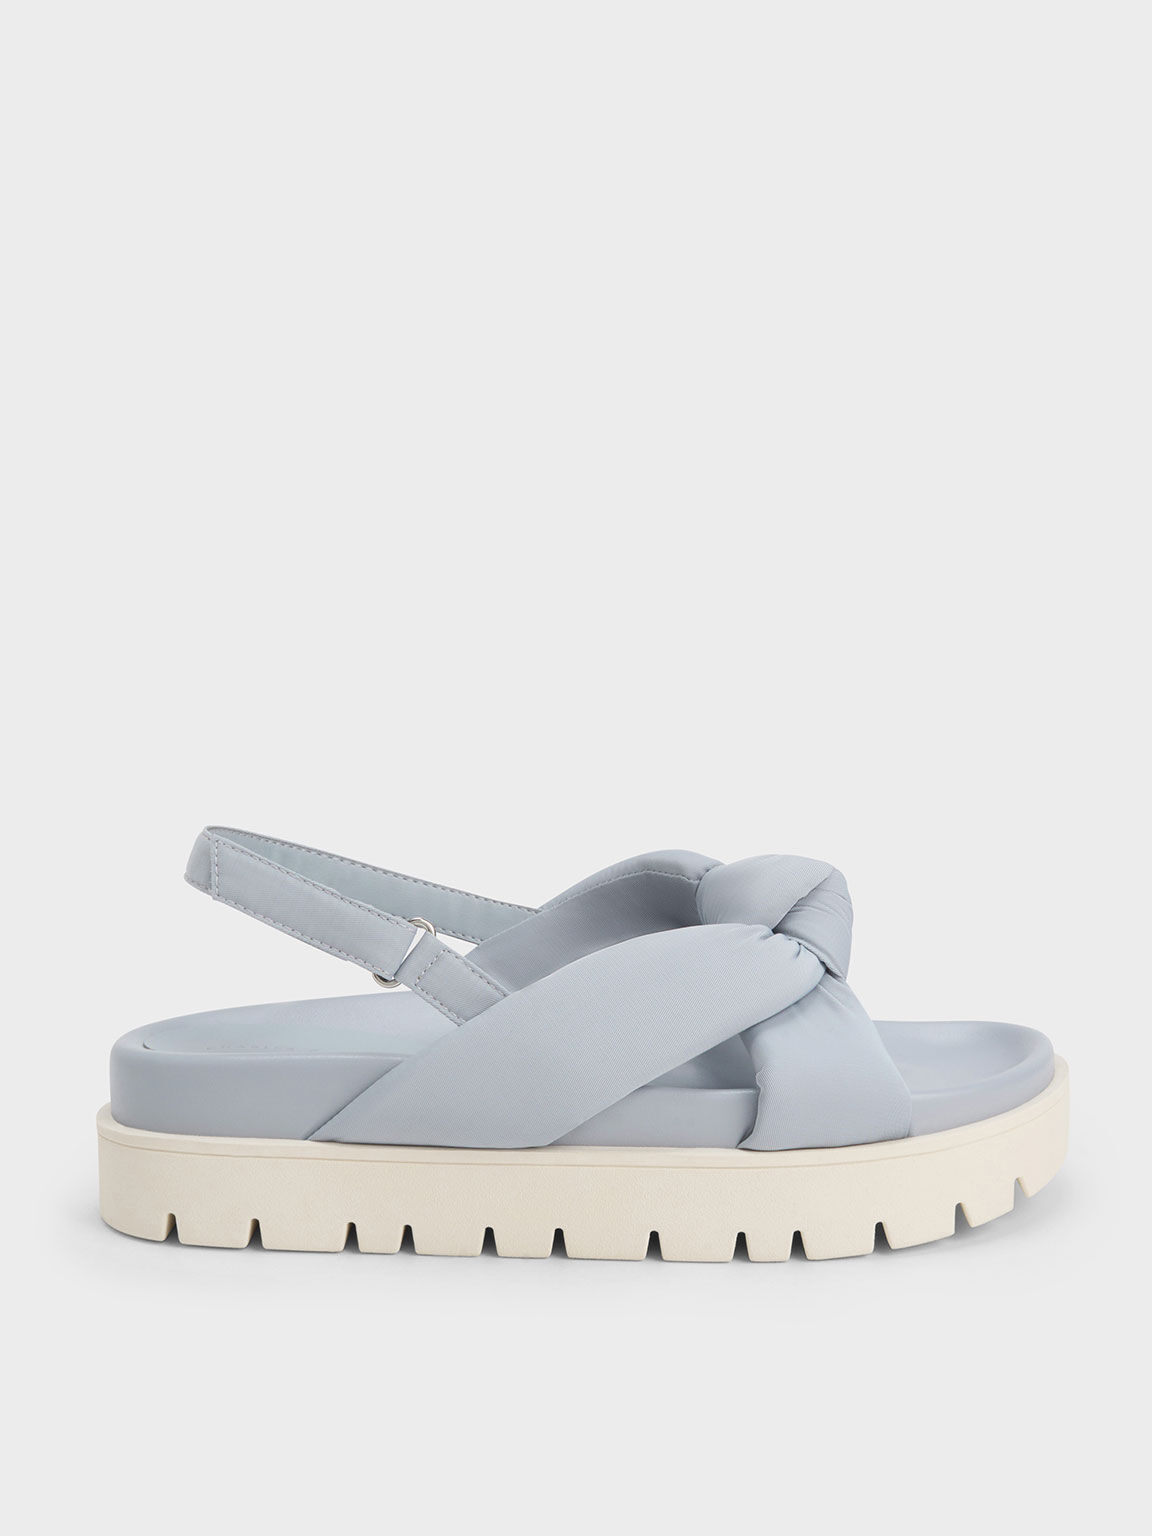 Sandal Flatform Nylon Knotted, Light Blue, hi-res